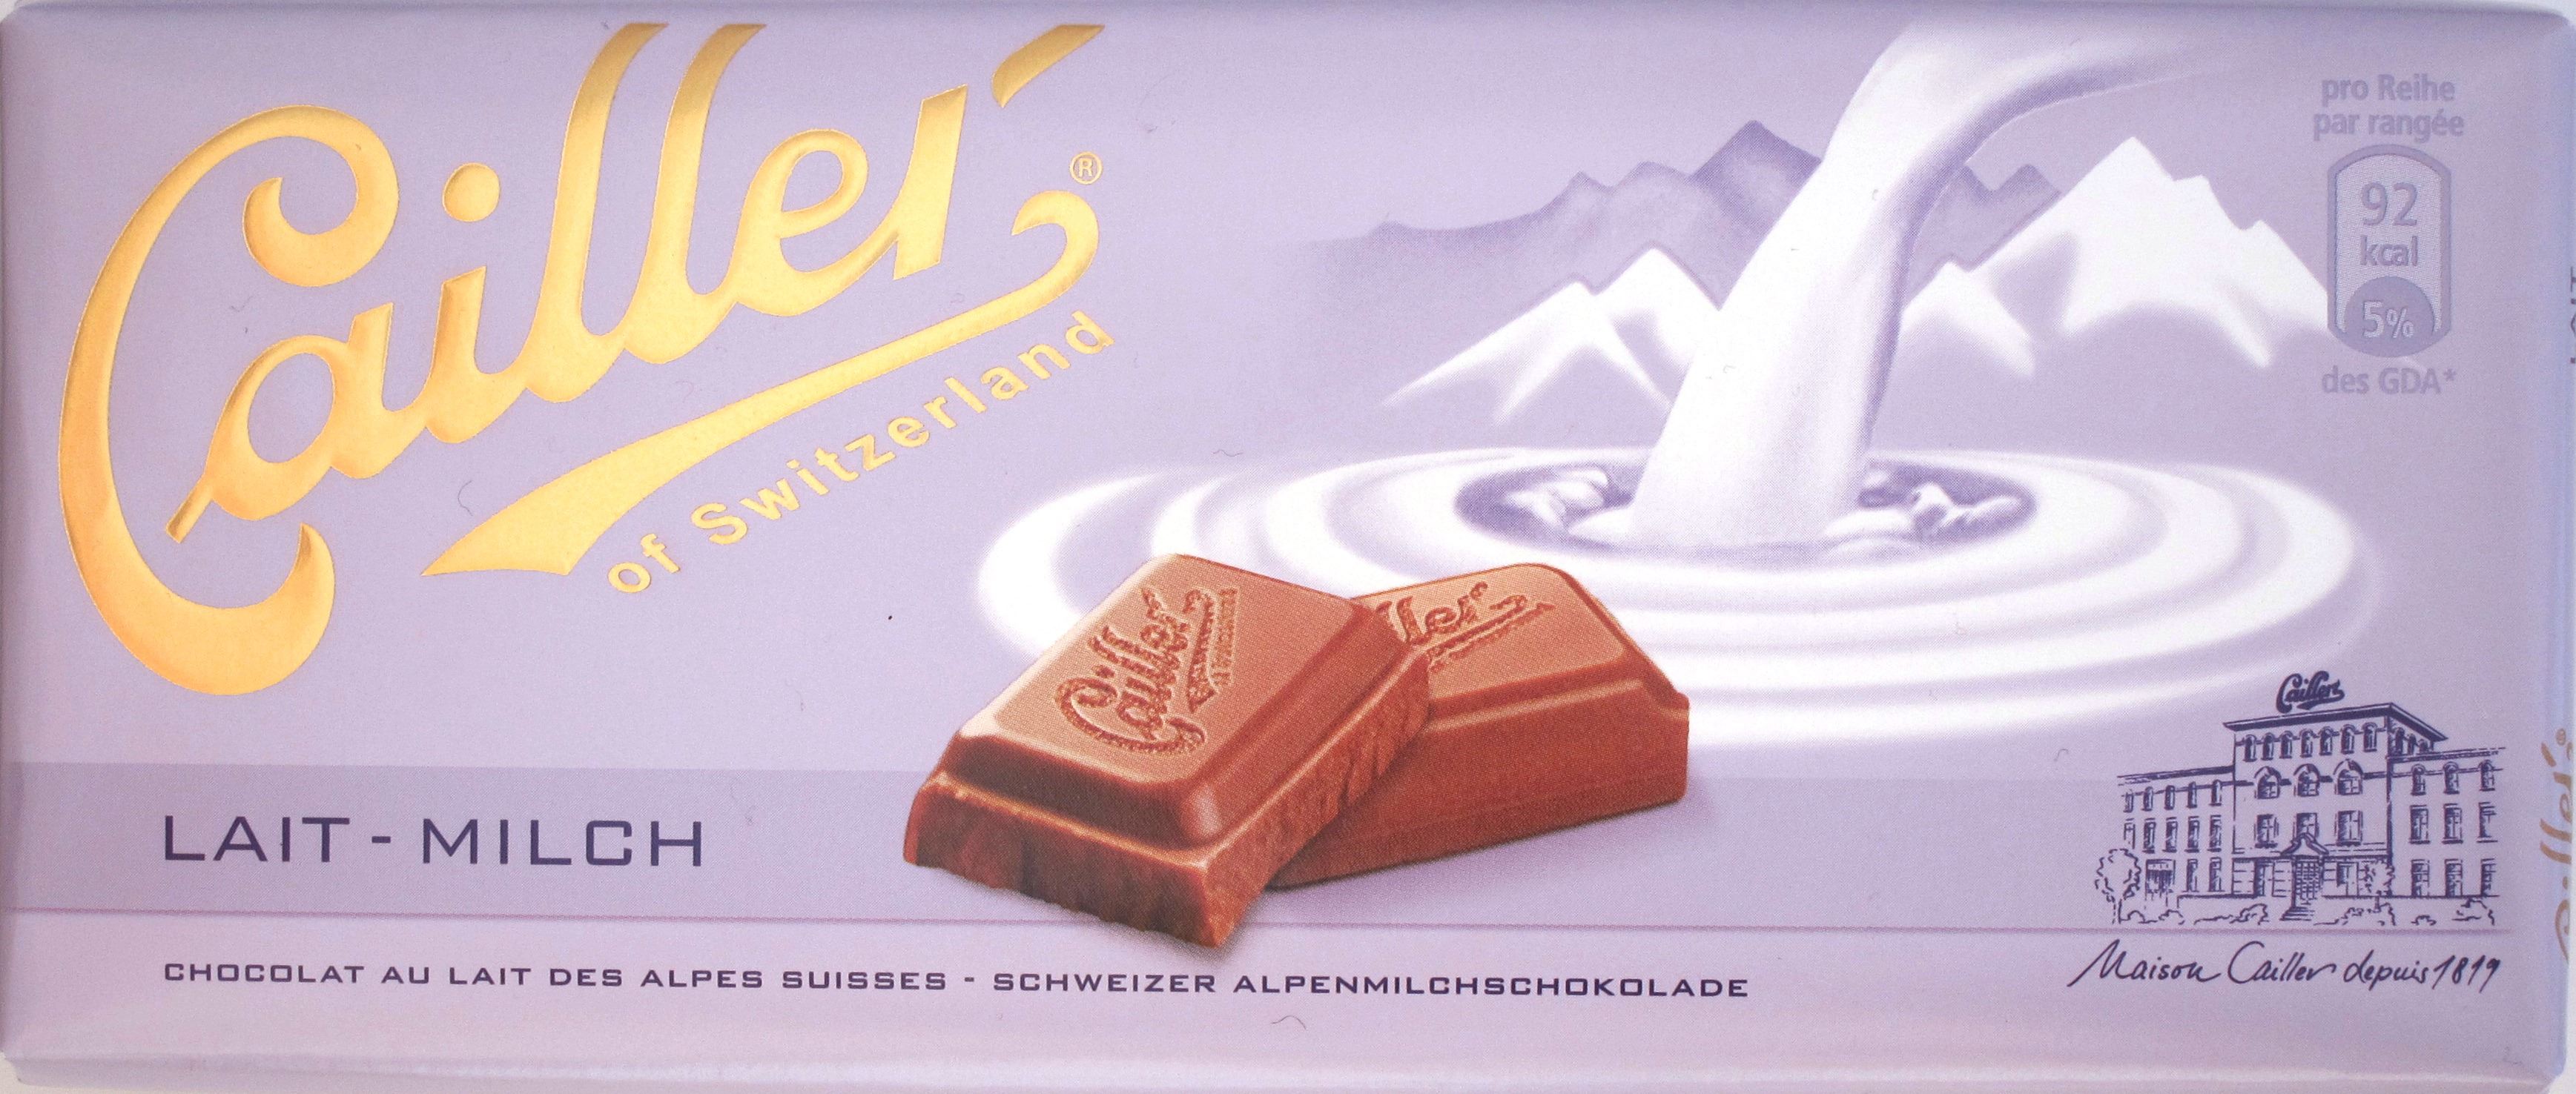 cailler-lait-milchschokolade.jpg